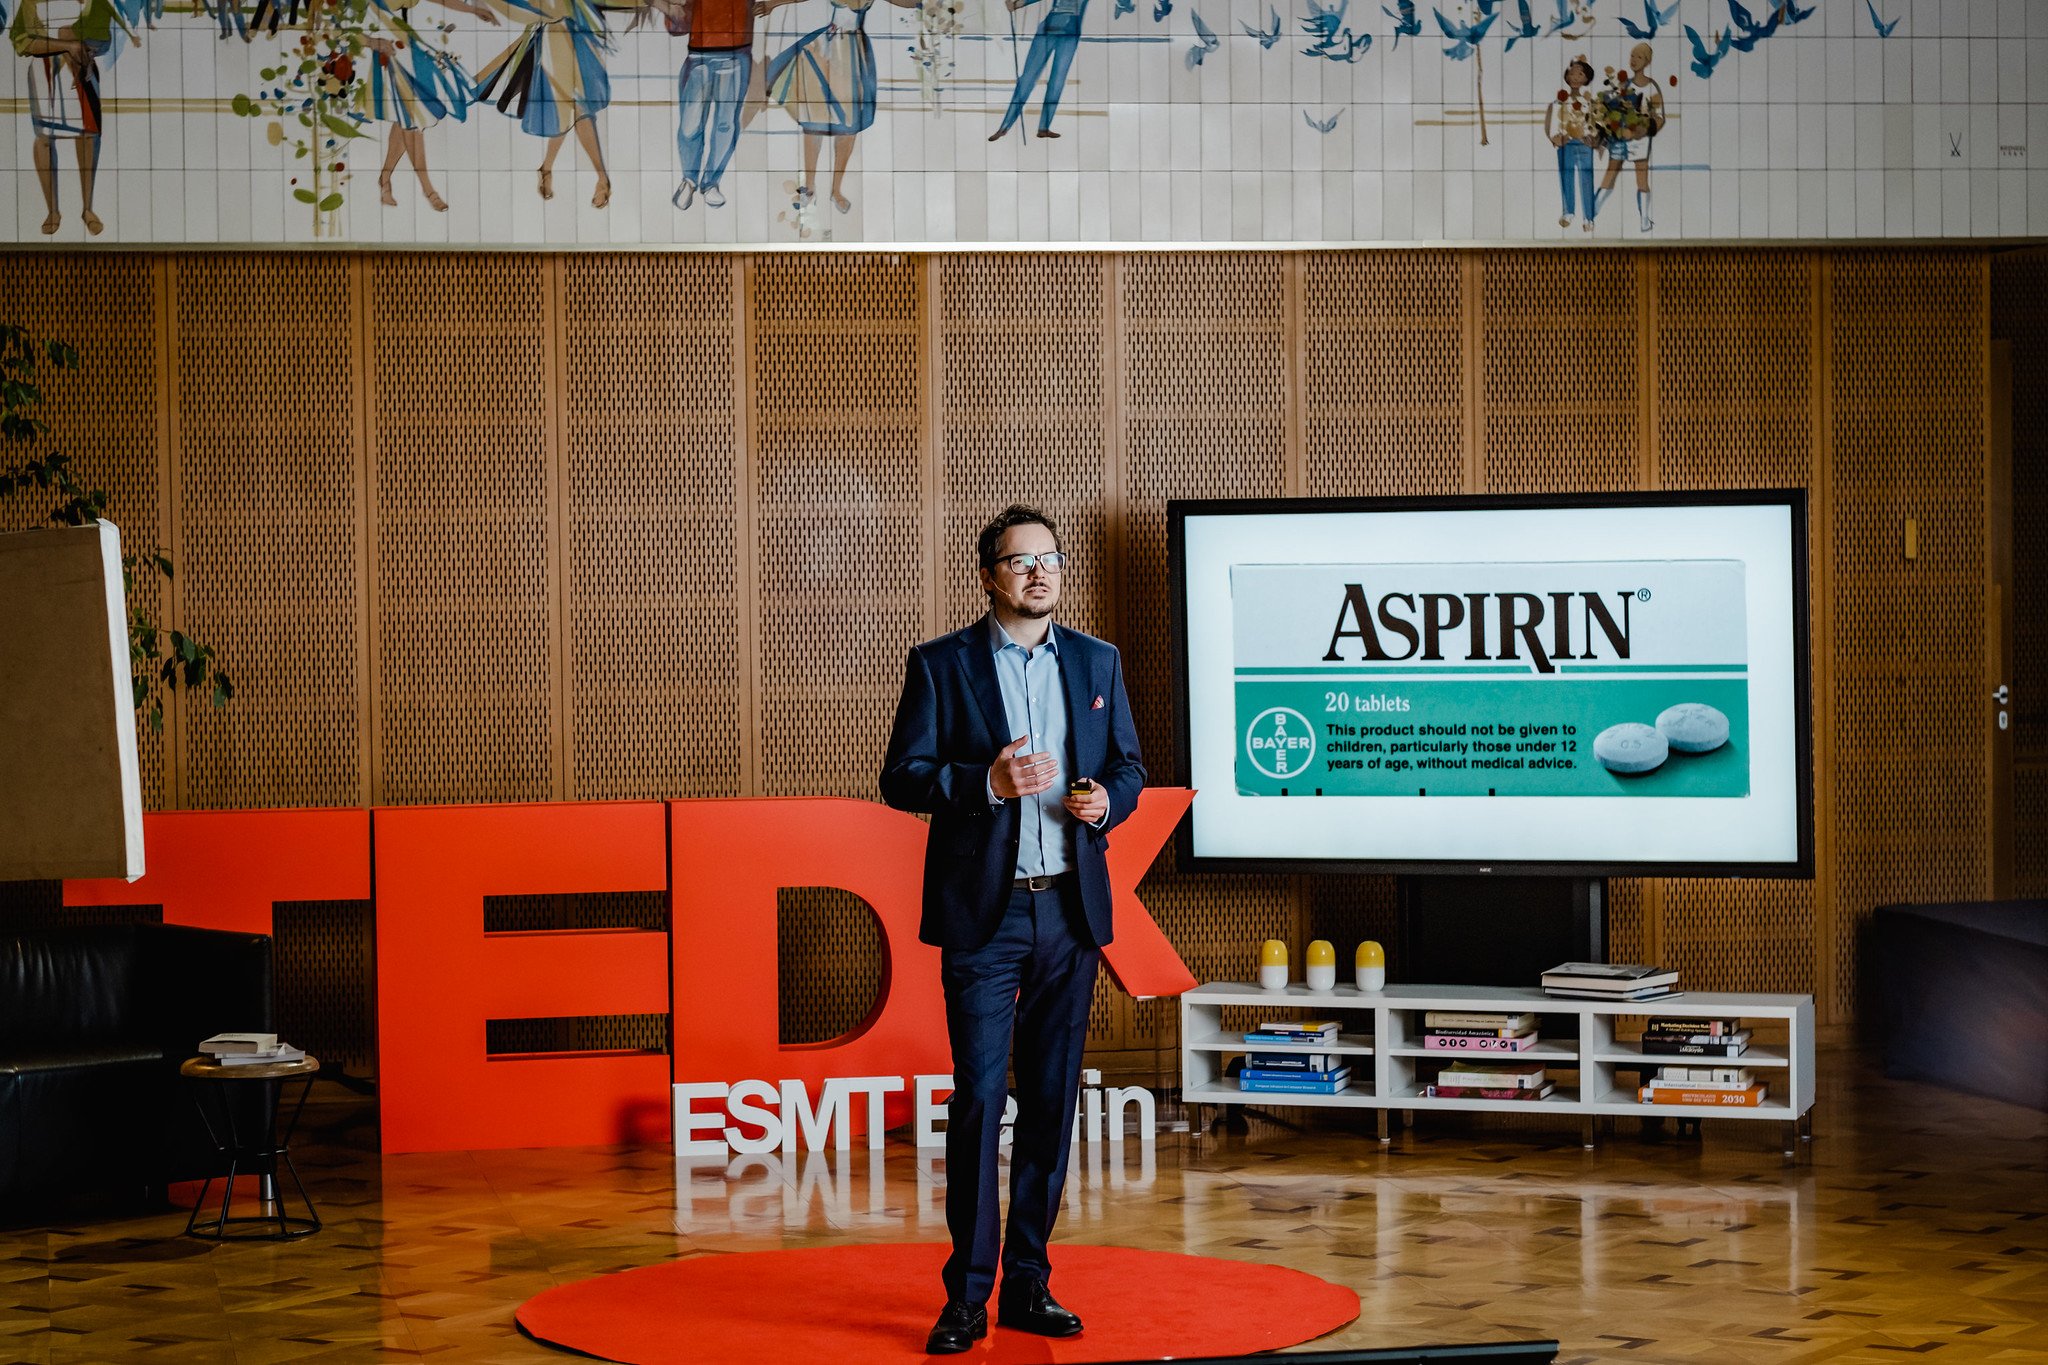 Stefan Wagner speaking at TEDx event at ESMT Berlin 